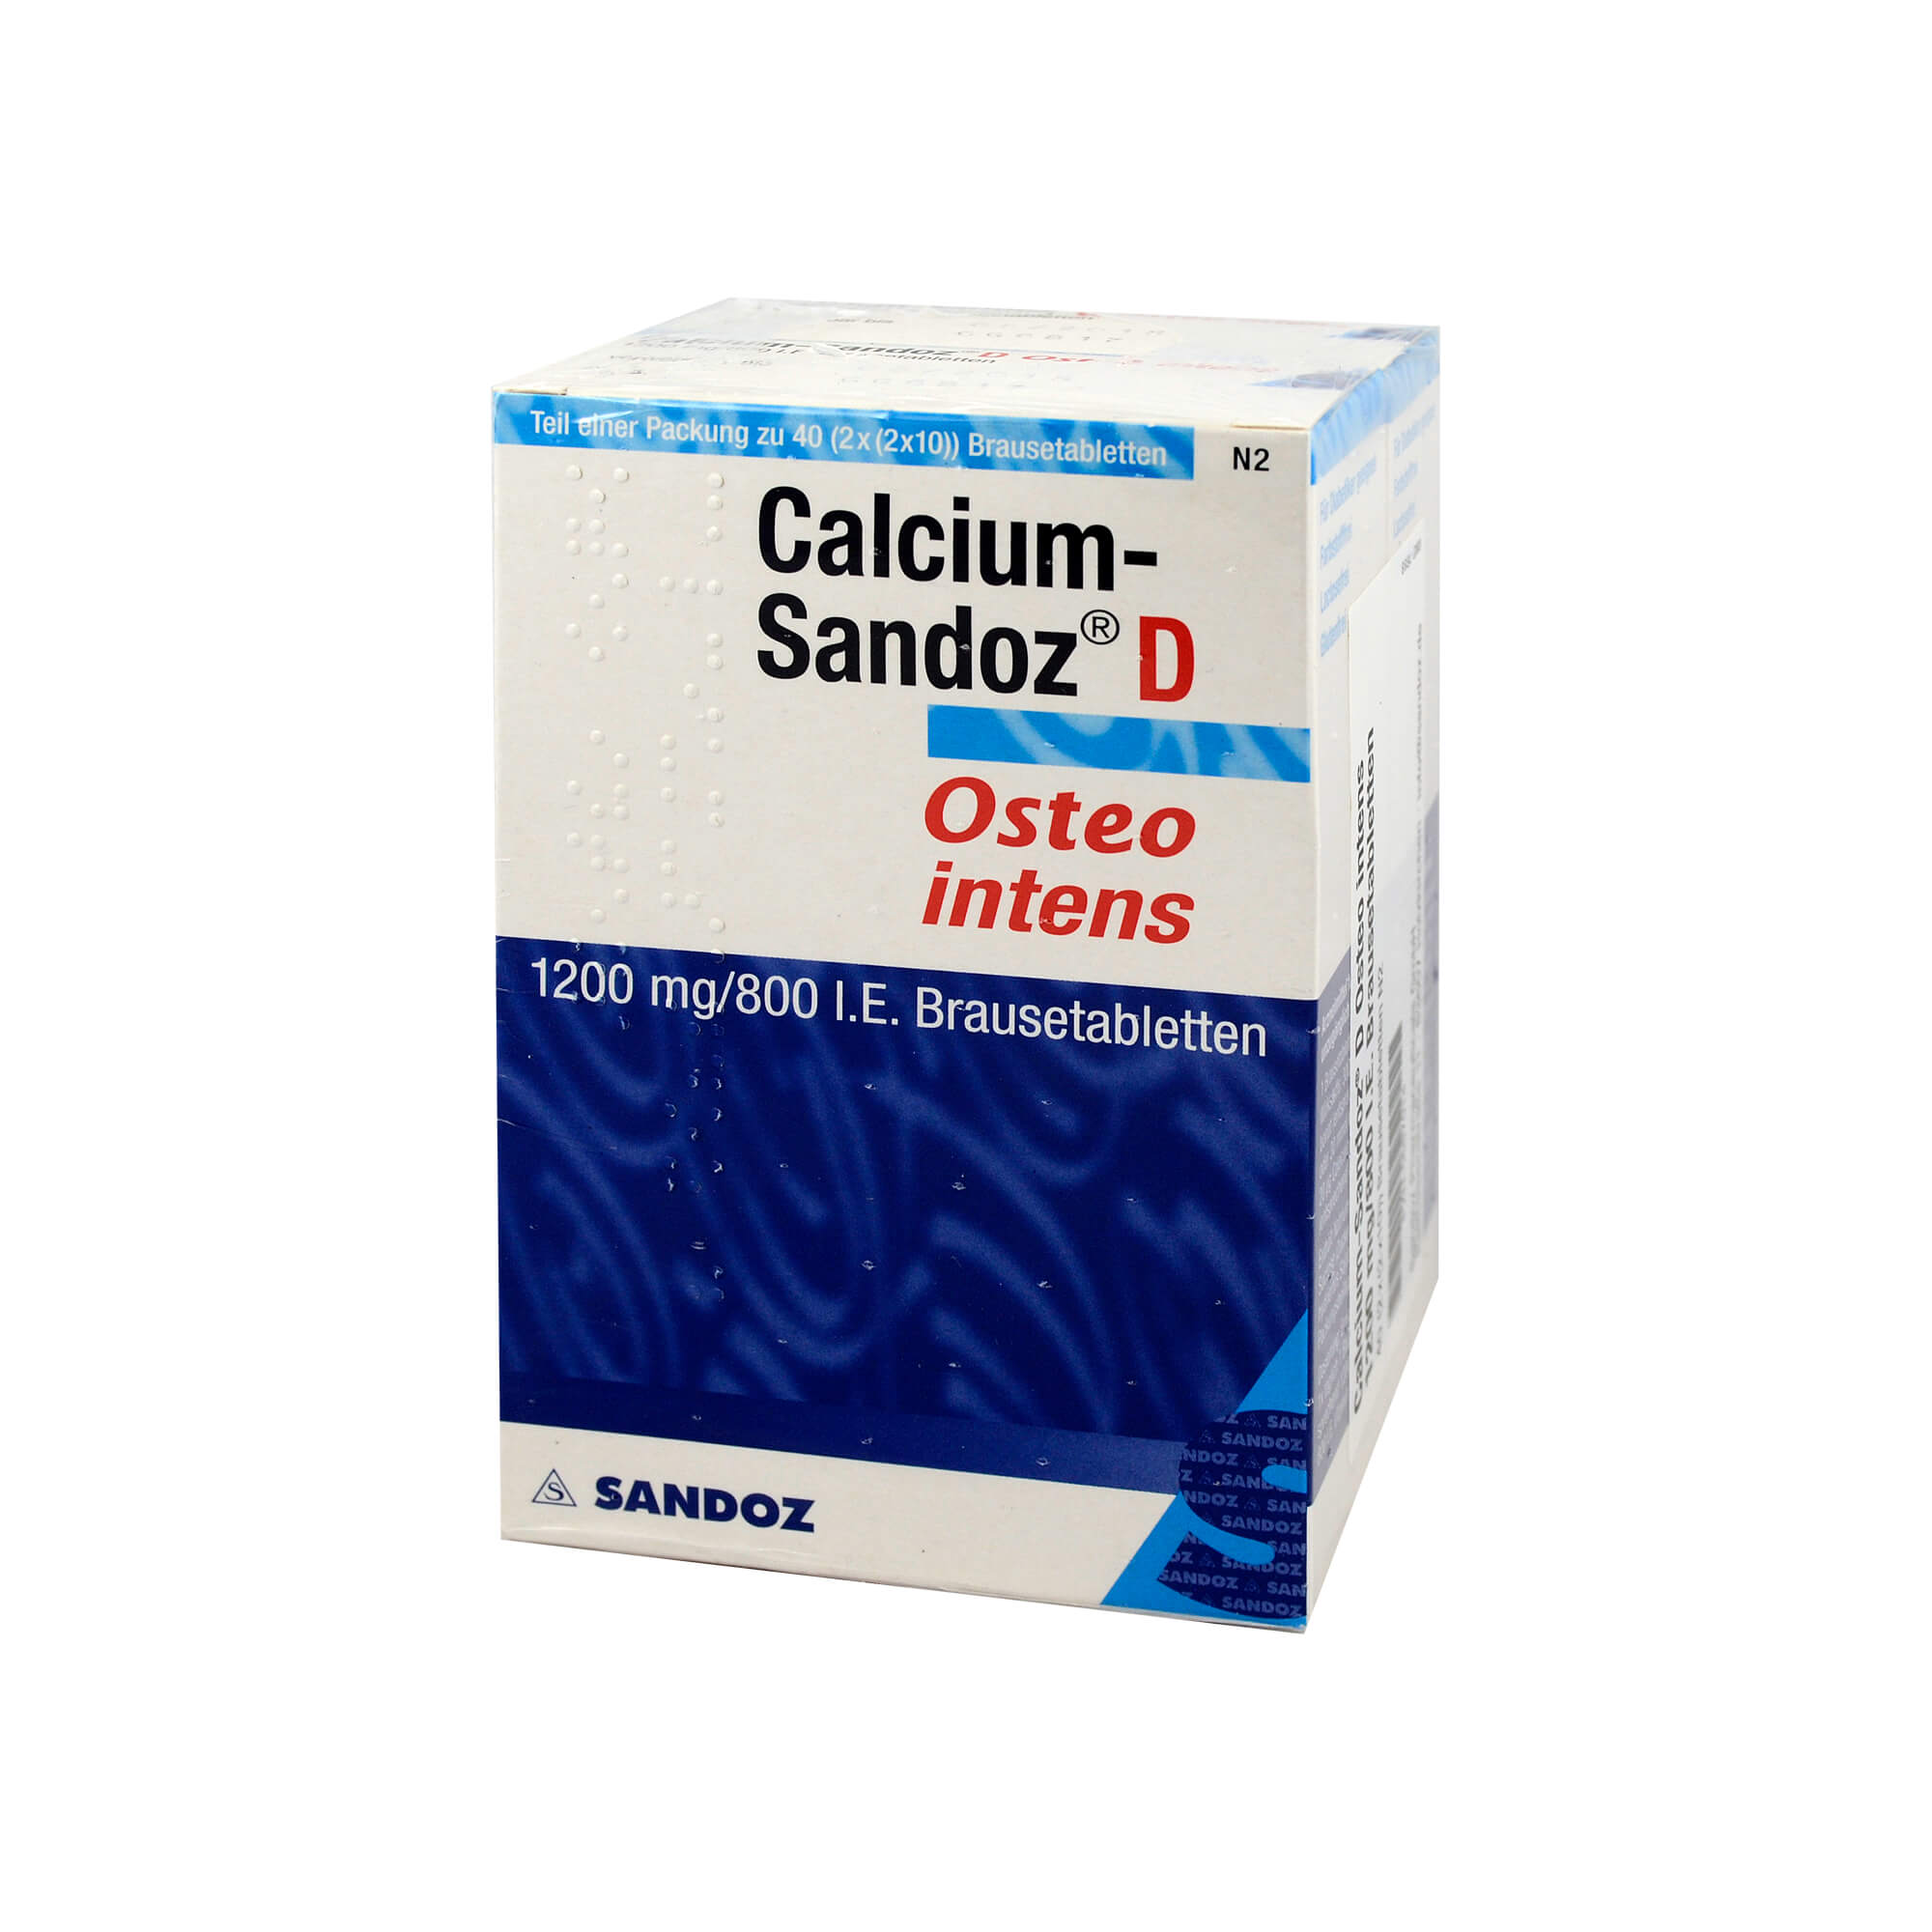 Angewendet bei nachgewiesenem Calcium- und Vitamin D-Mangel sowie zur unterstützenden Behandlung von Osteoporose.